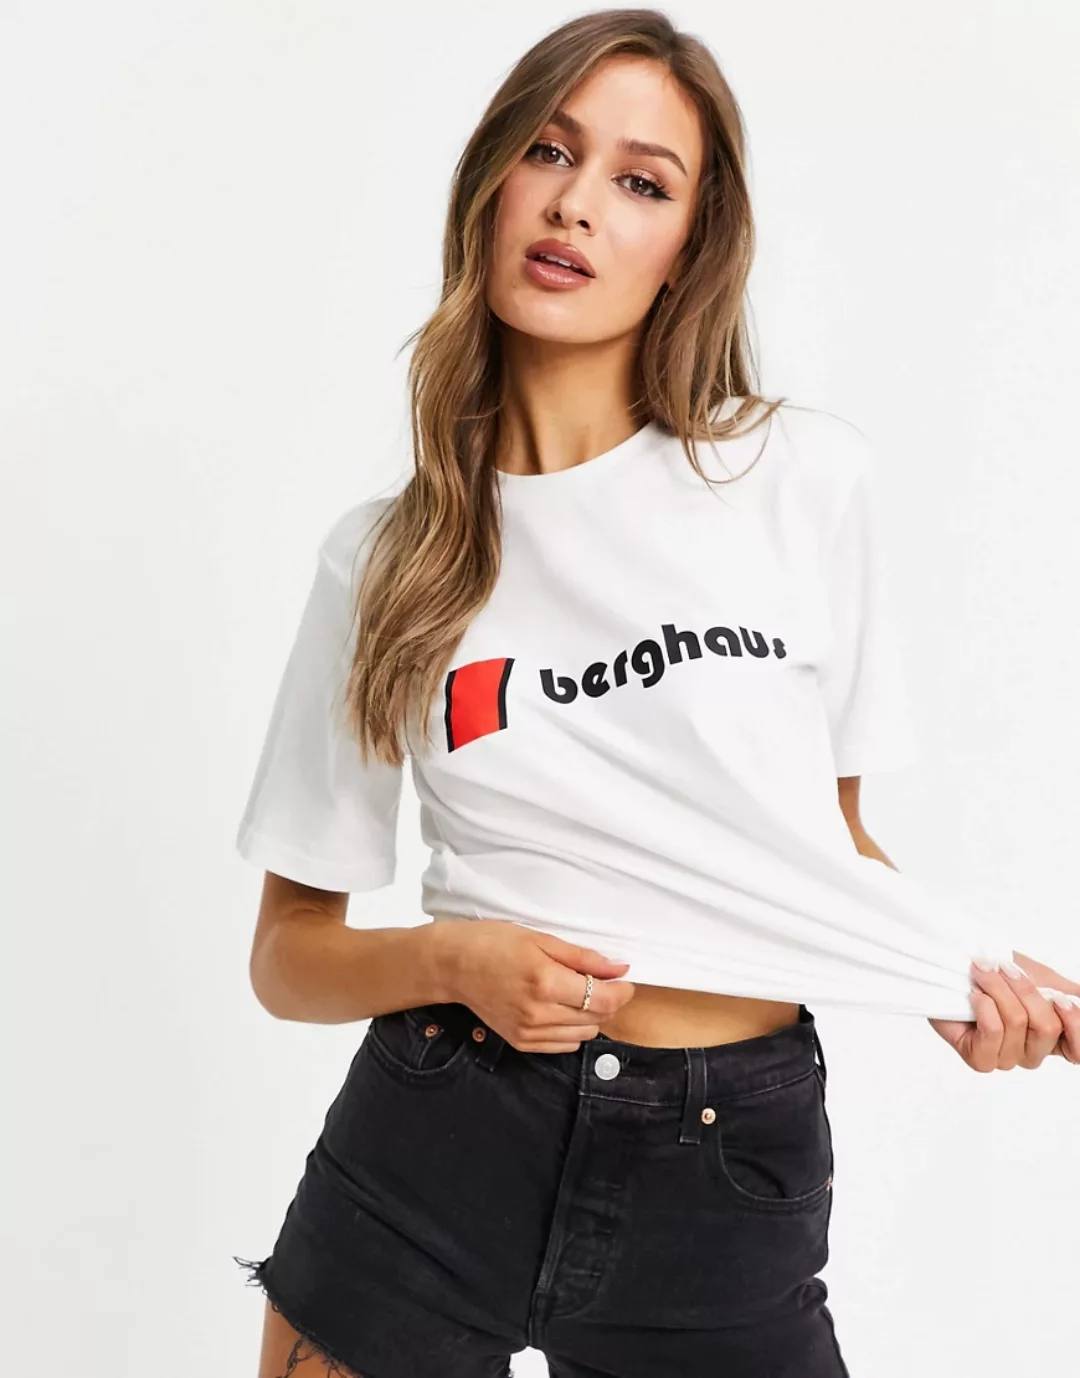 Berghaus – Weißes T-Shirt mit Heritage-Logo vorn günstig online kaufen